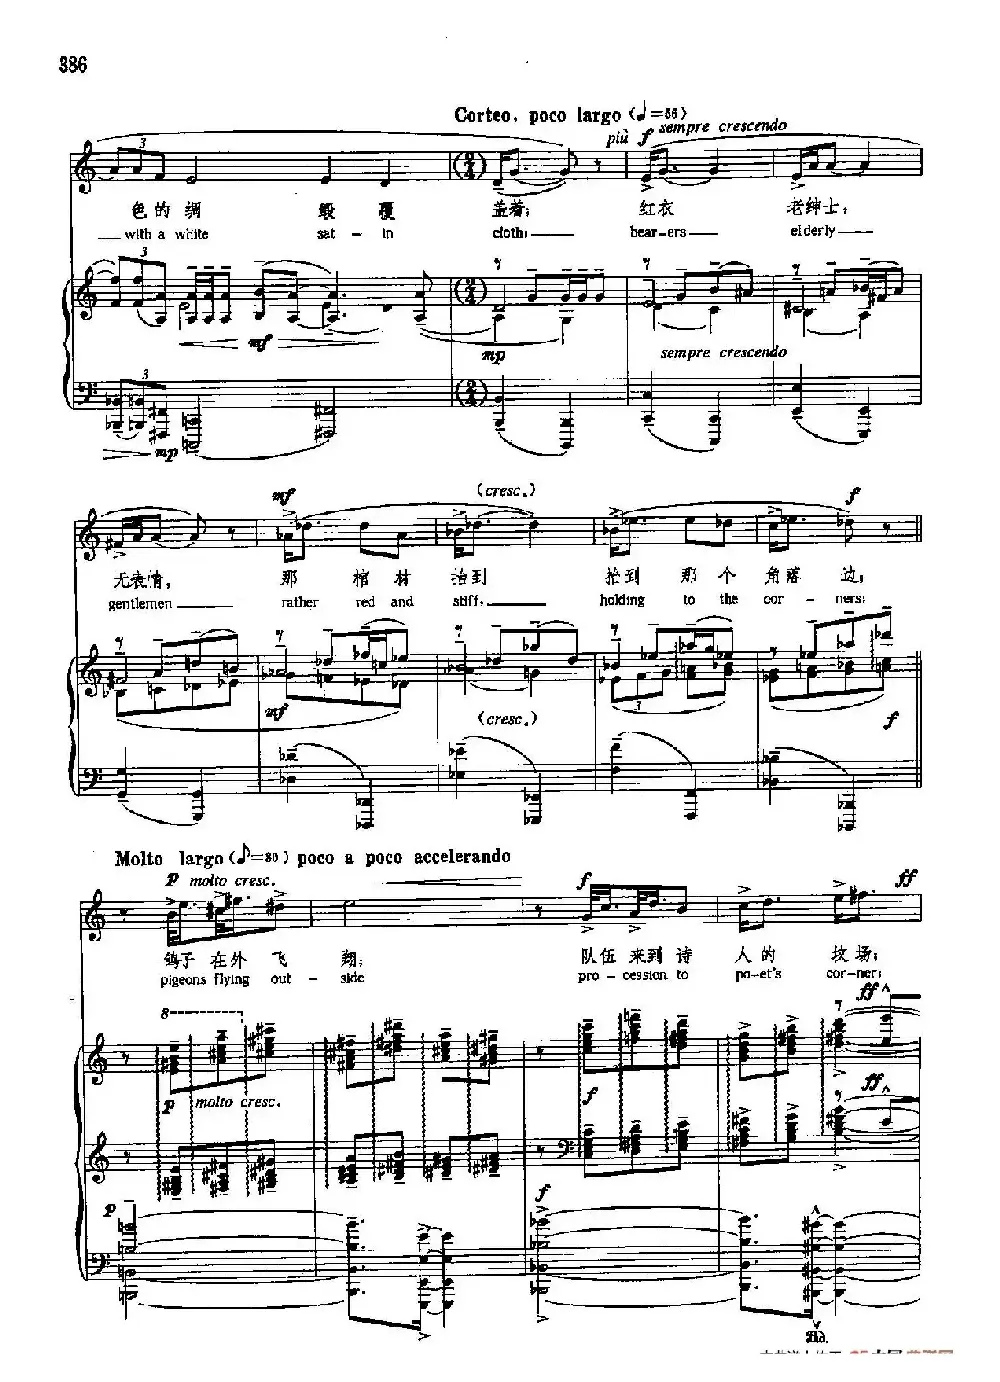 声乐教学曲库5-90哈代的葬礼（正谱） （选自《弗吉尼亚·伍尔夫日记》）